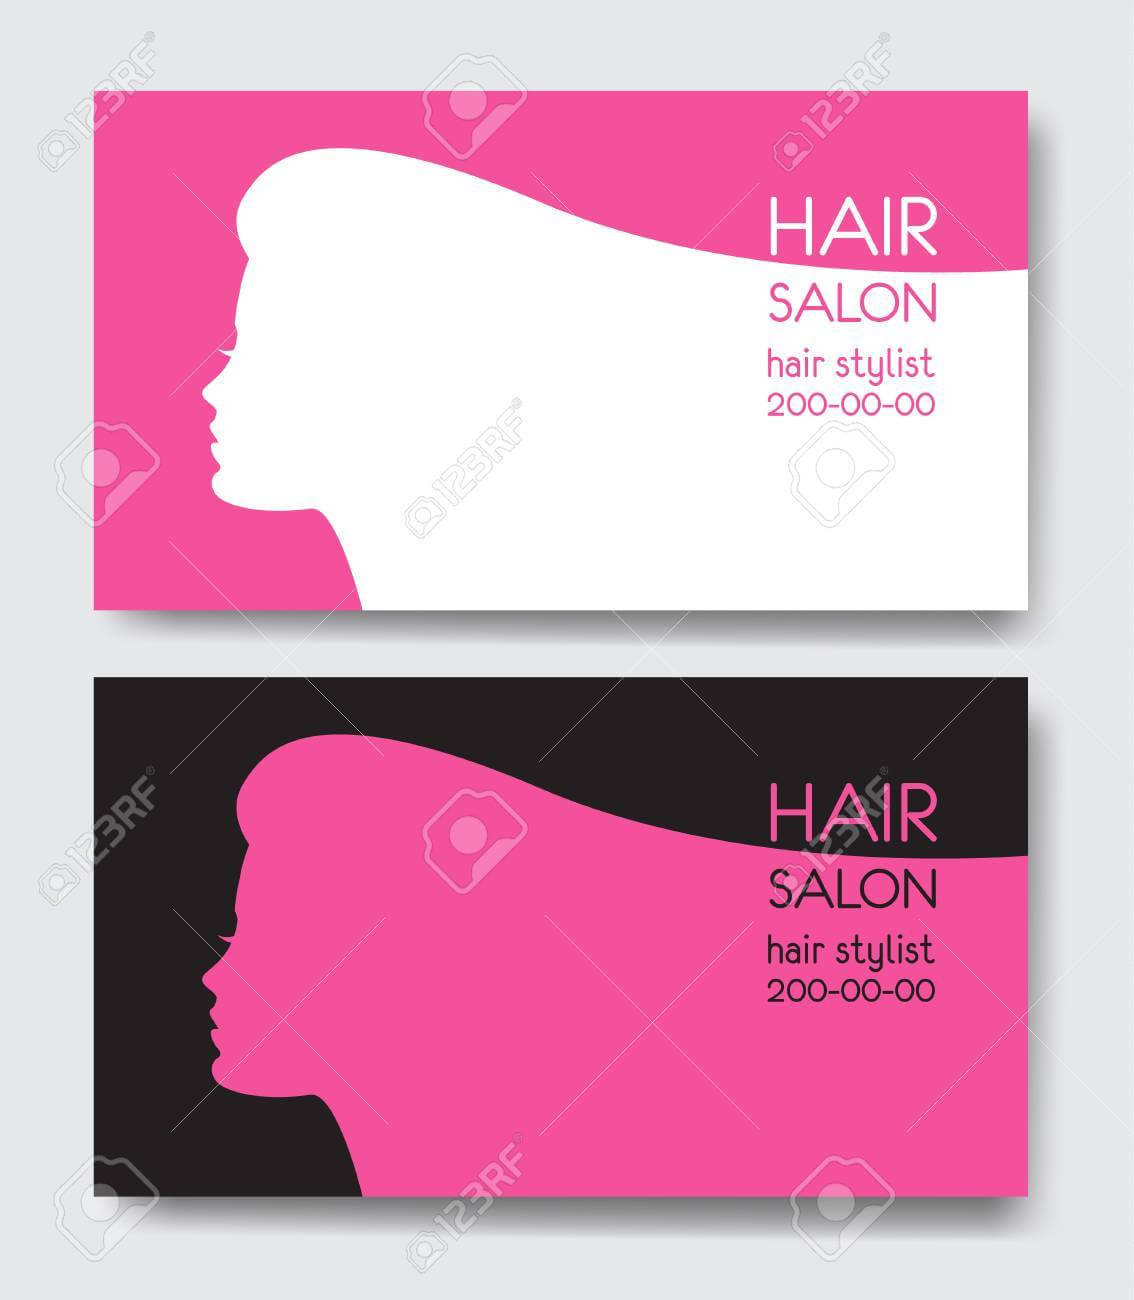 Hair Salon Business Card Templates. Within Hair Salon Business Card Template